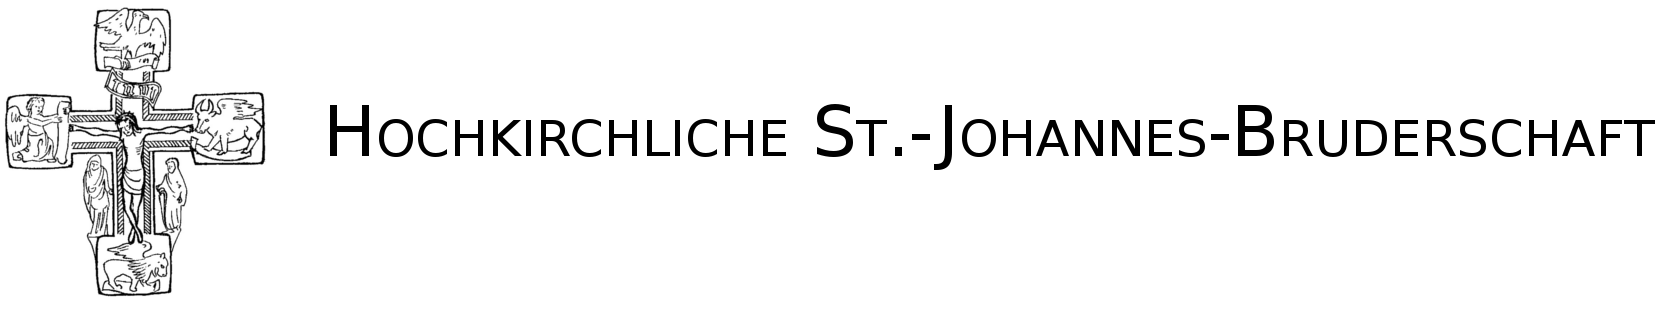 Hochkirchliche St.-Johannes-Bruderschaft